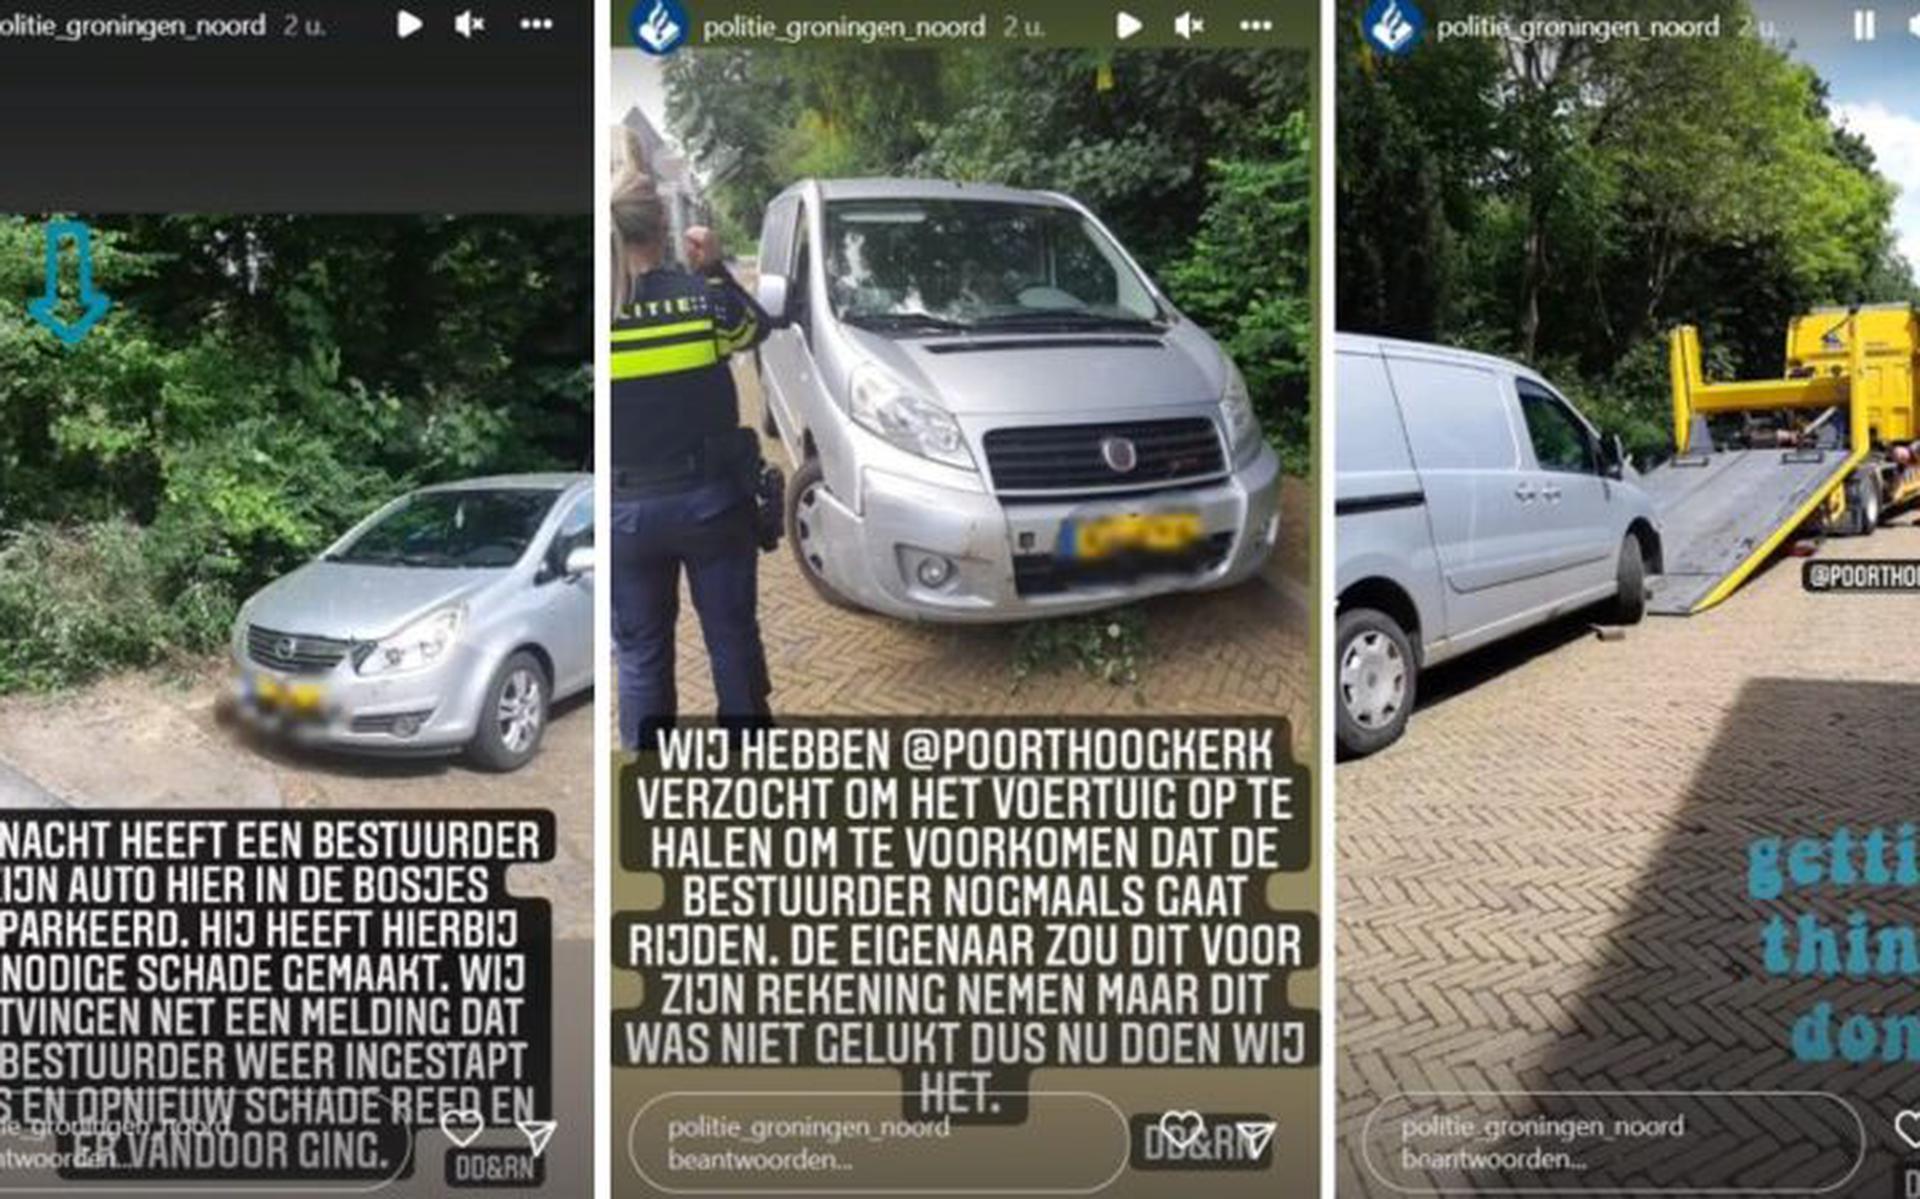 typist Zwart Heerlijk Bestuurder parkeert auto in de bosjes van Noorderplantsoen en wil bij  daglicht verder rijden. Politie says no! - Sikkom